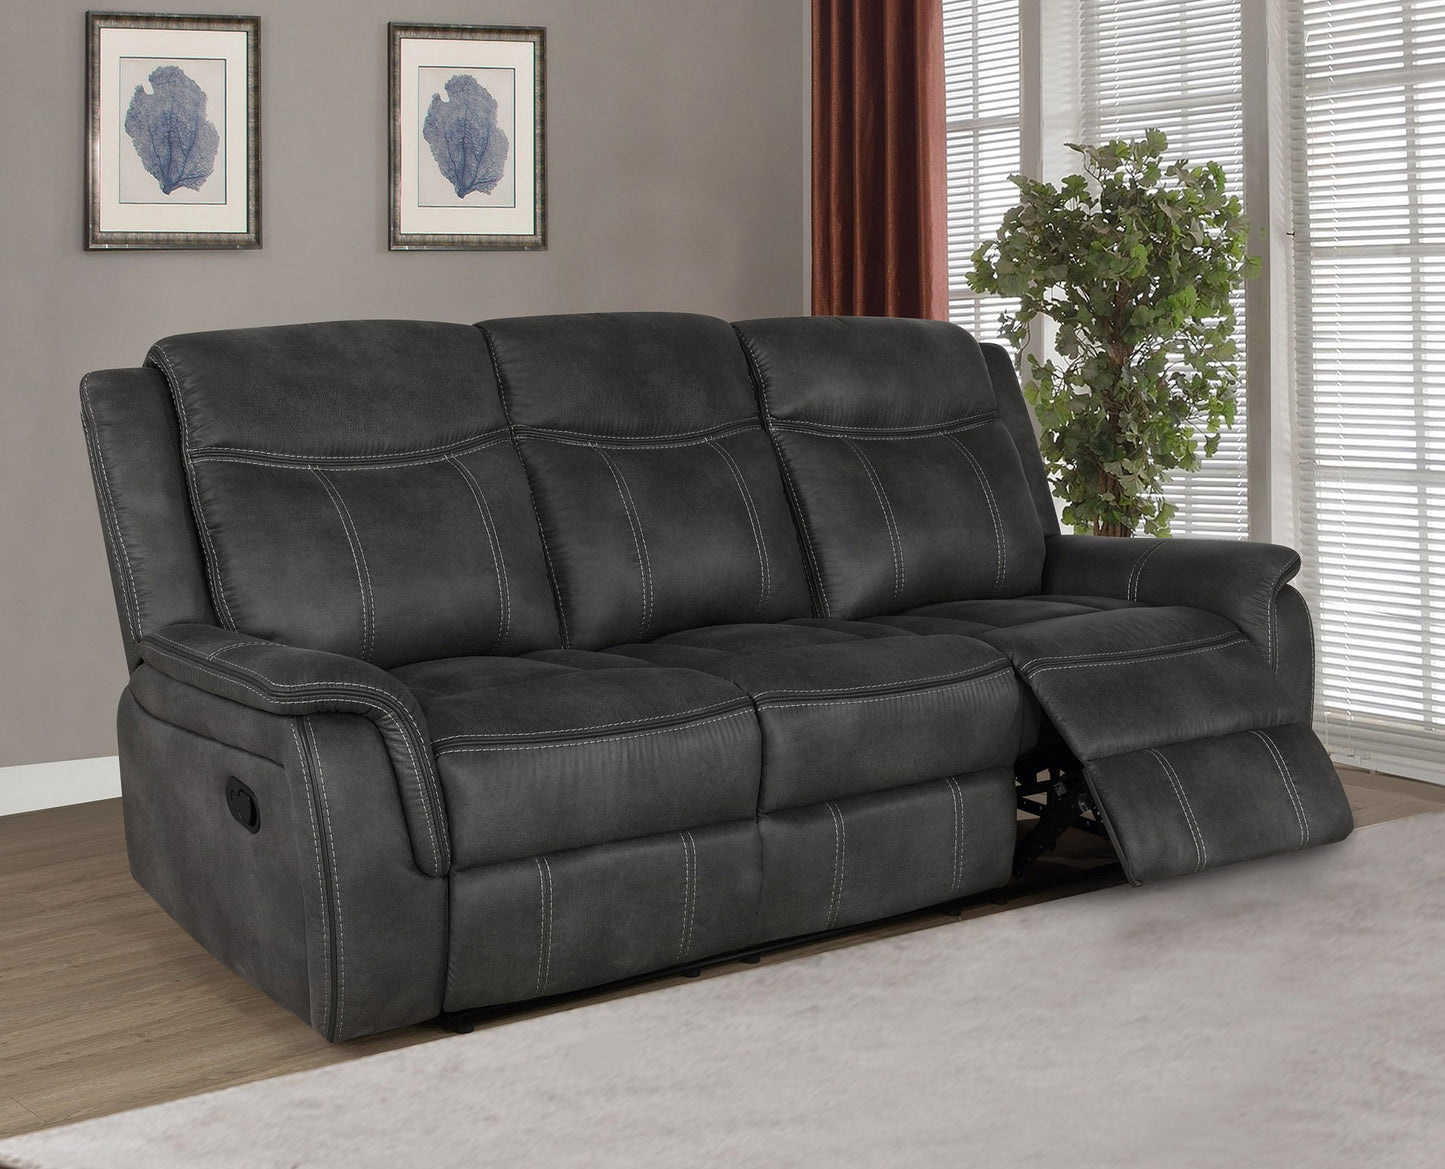 Lawrence Upholstered Tufted Living Room Set